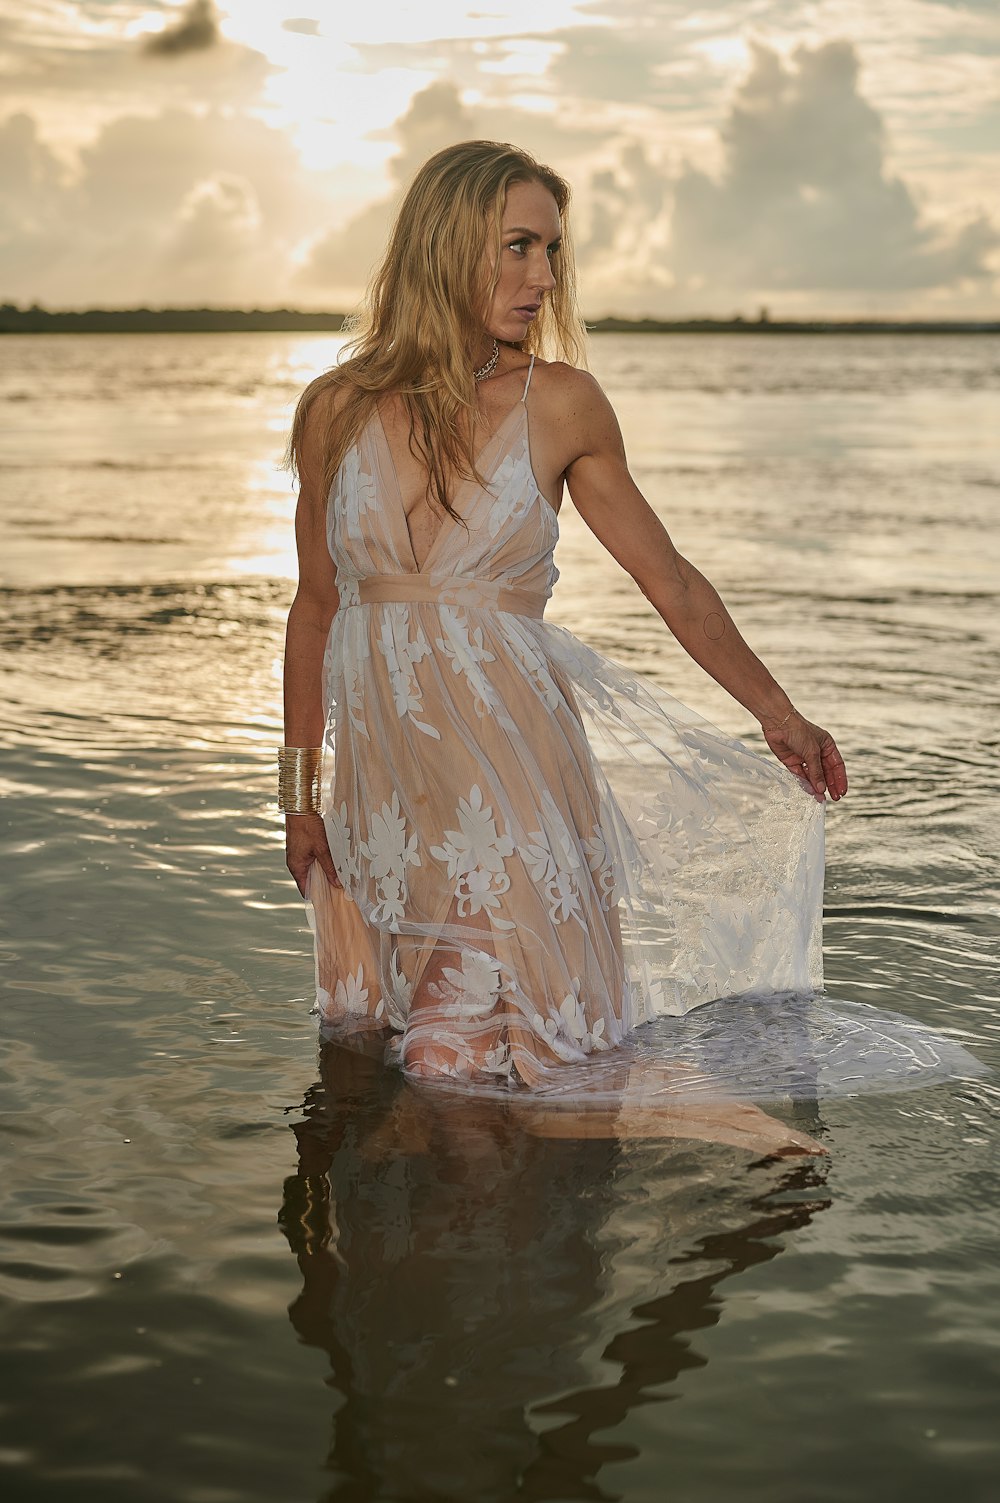 une personne en robe blanche debout dans l’eau